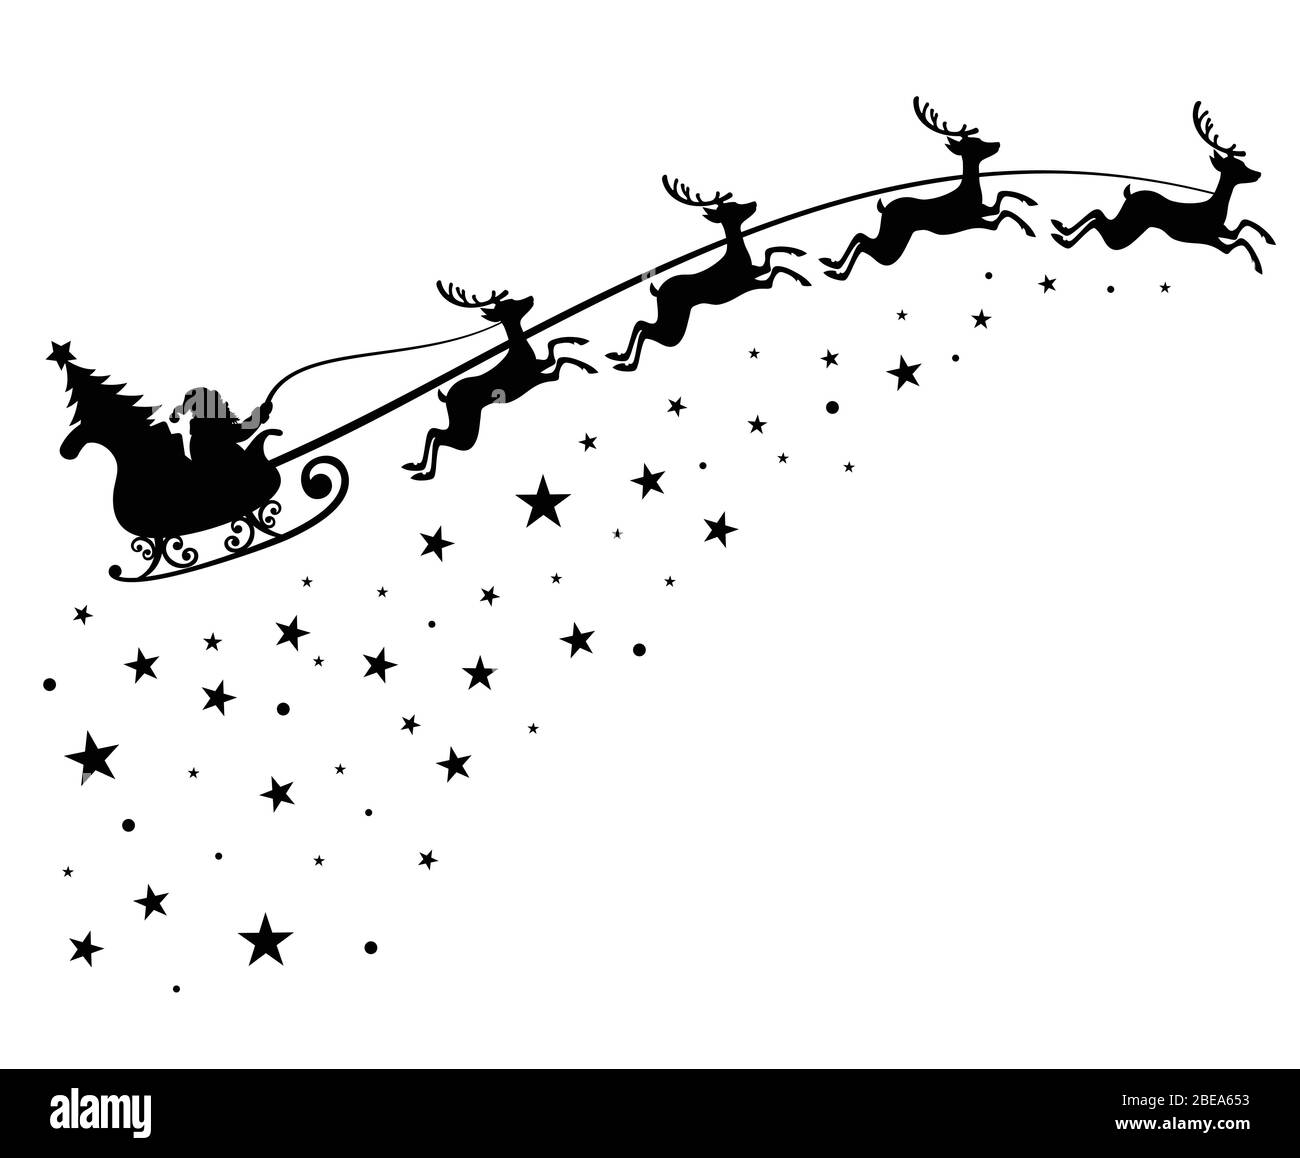 Weihnachtsmann auf Schlitten fliegenden Himmel mit Hirhe schwarz Vektor Silhouette für Winter Weihnachtsdekoration und Weihnachten Grußkarte. Monochrome weihnachtsmann mit weihnachtsbaum in Nachthimmel Illustration Stock Vektor